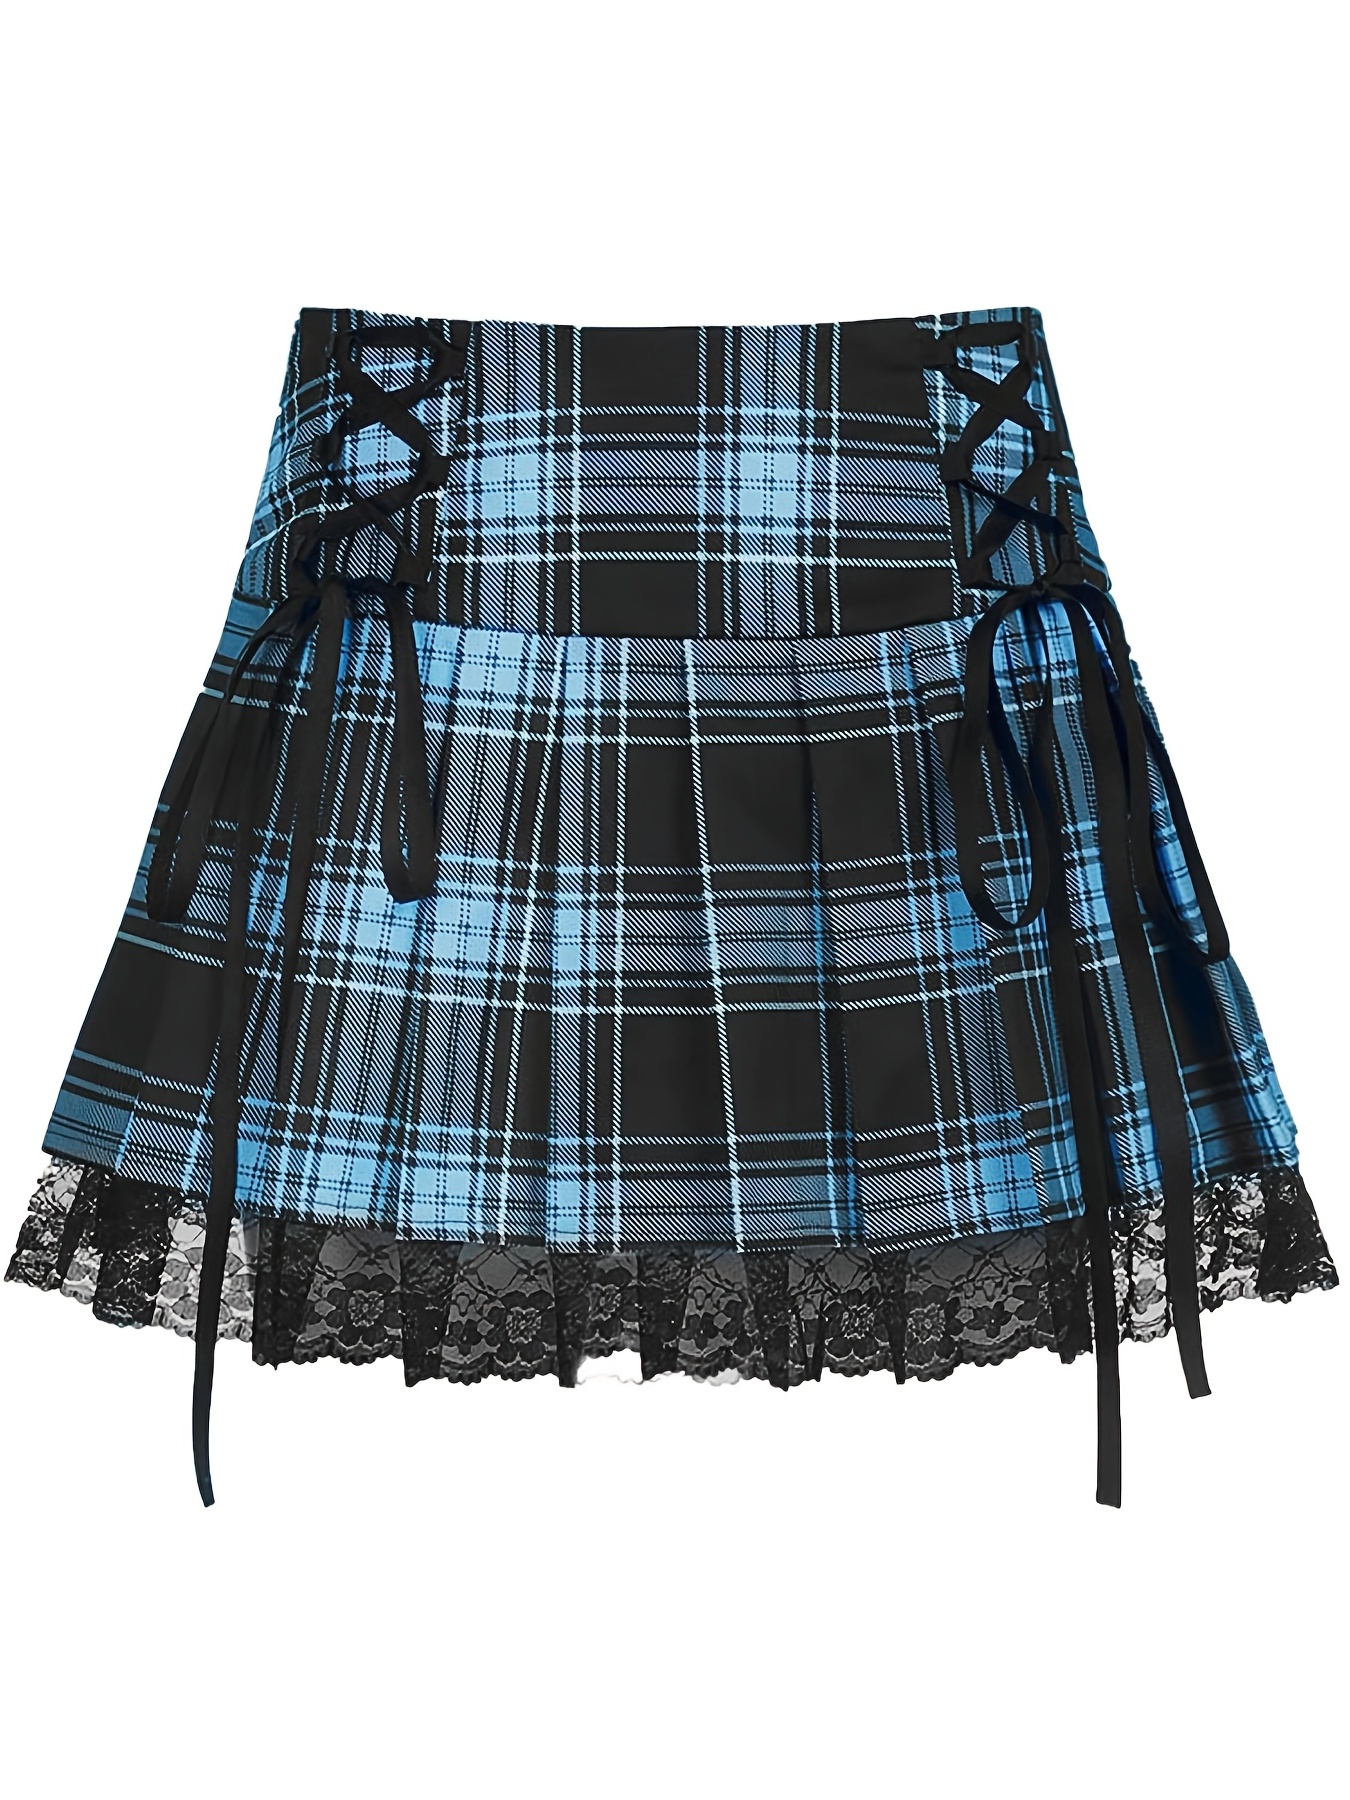 Gothic Plaid Skirt Black White Lace Trim – Aesthetics Boutique